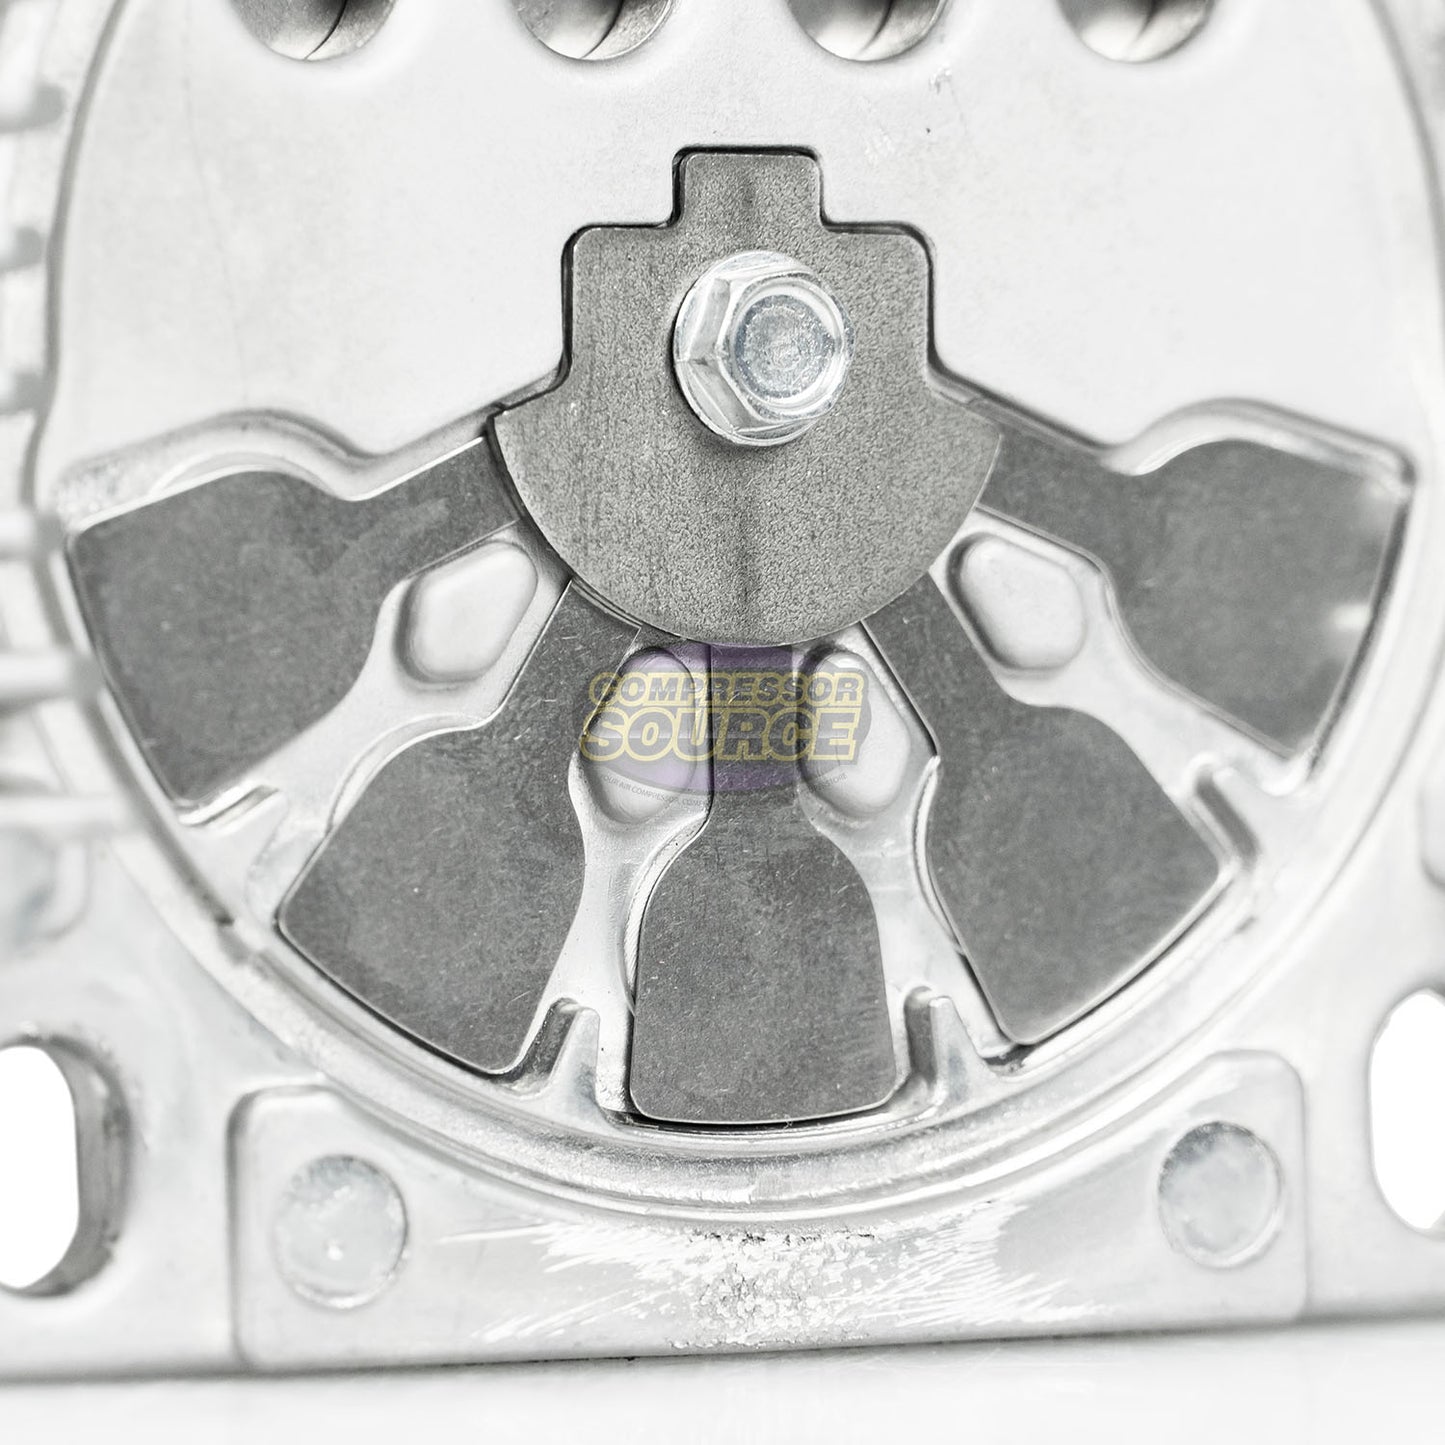 Coleman Powermate / Sanborn Valve Plate Assembly Replacement Repair Kit 043-0171